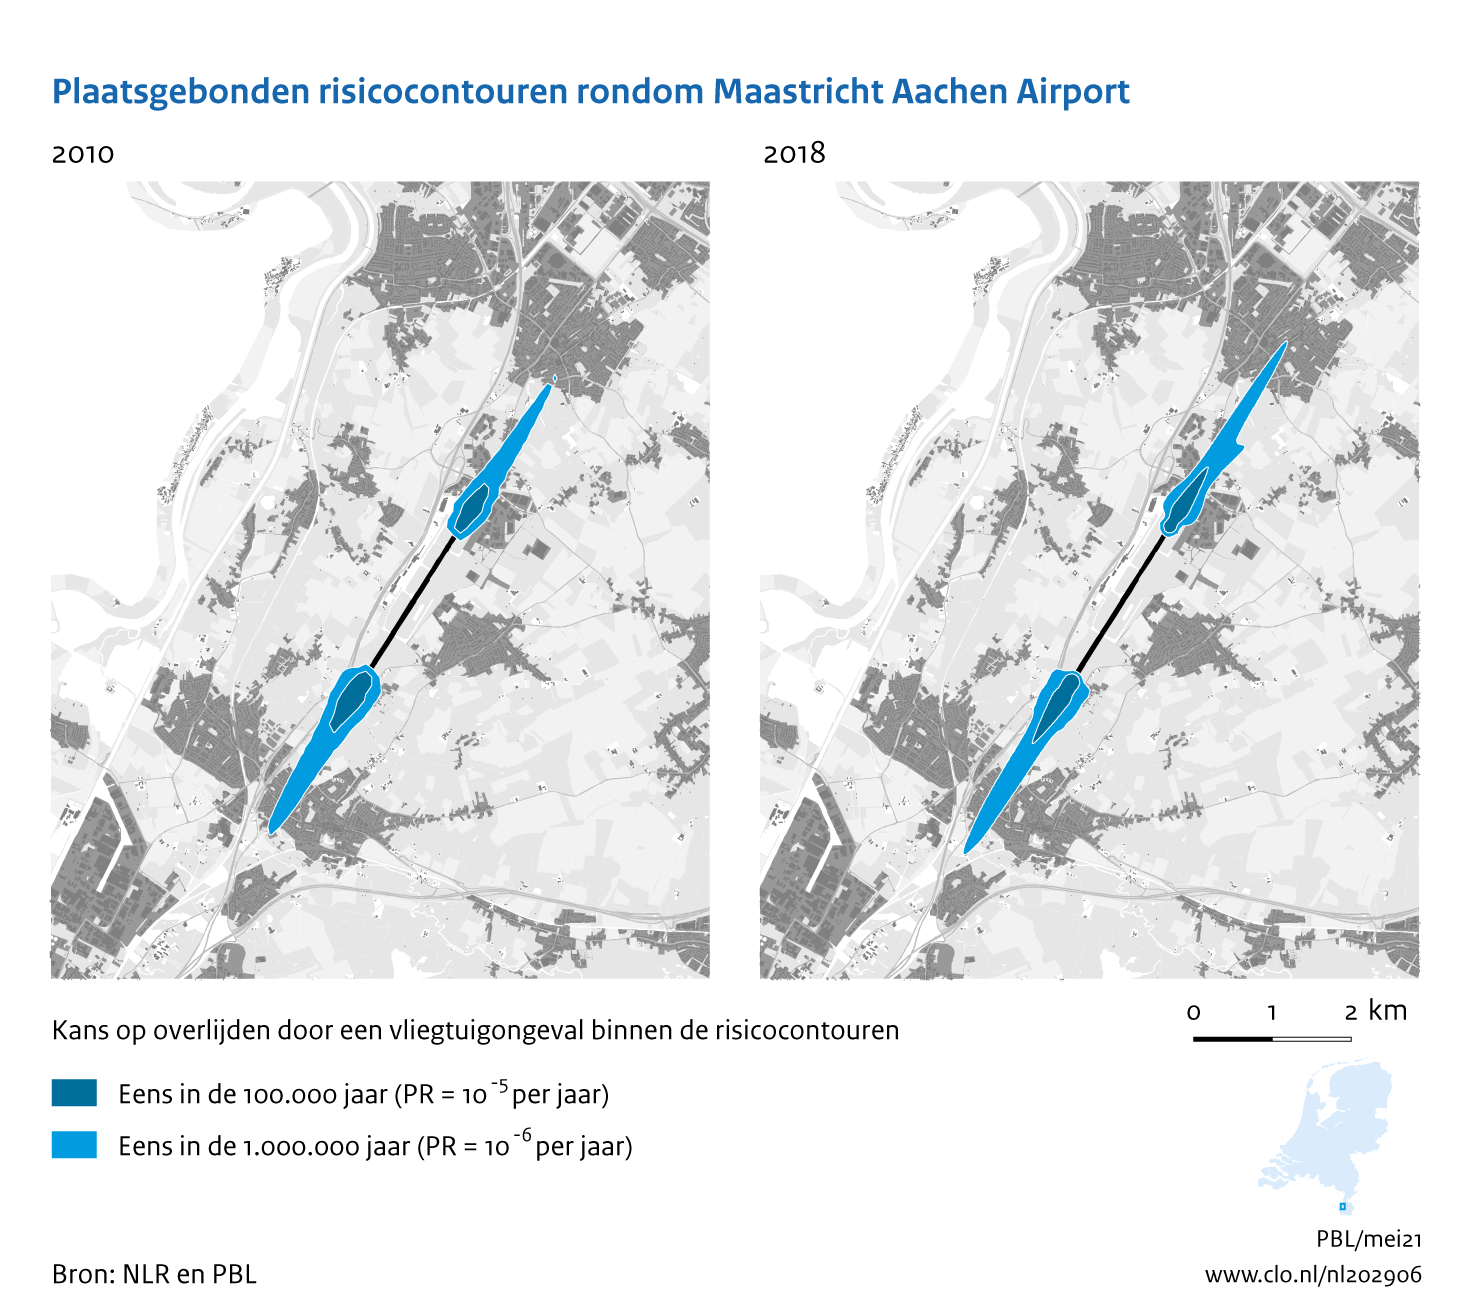 Figuur Plaatsgebonden risicocontouren rondom Maastricht Aachen Airport, 2010-2018. In de rest van de tekst wordt deze figuur uitgebreider uitgelegd.